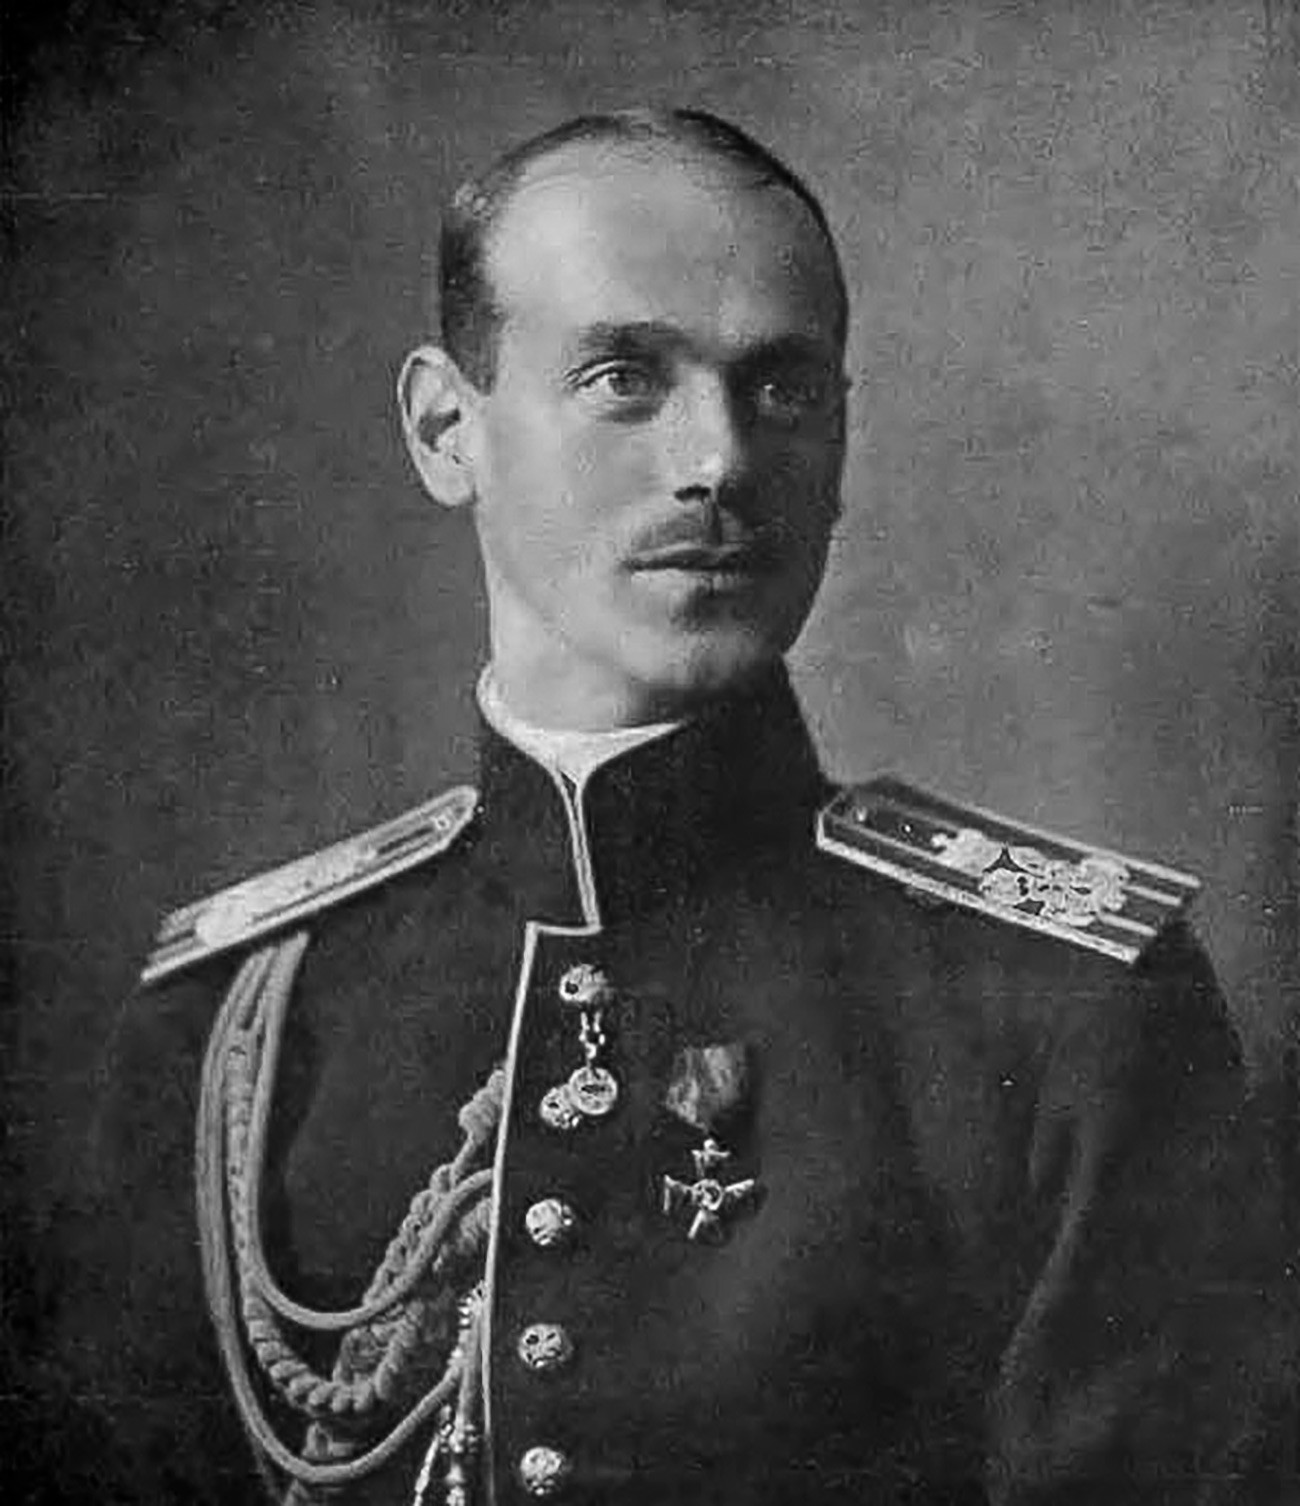 Руски велики кнез Михаил Александрович, млађи брат последњег руског цара Николаја II.